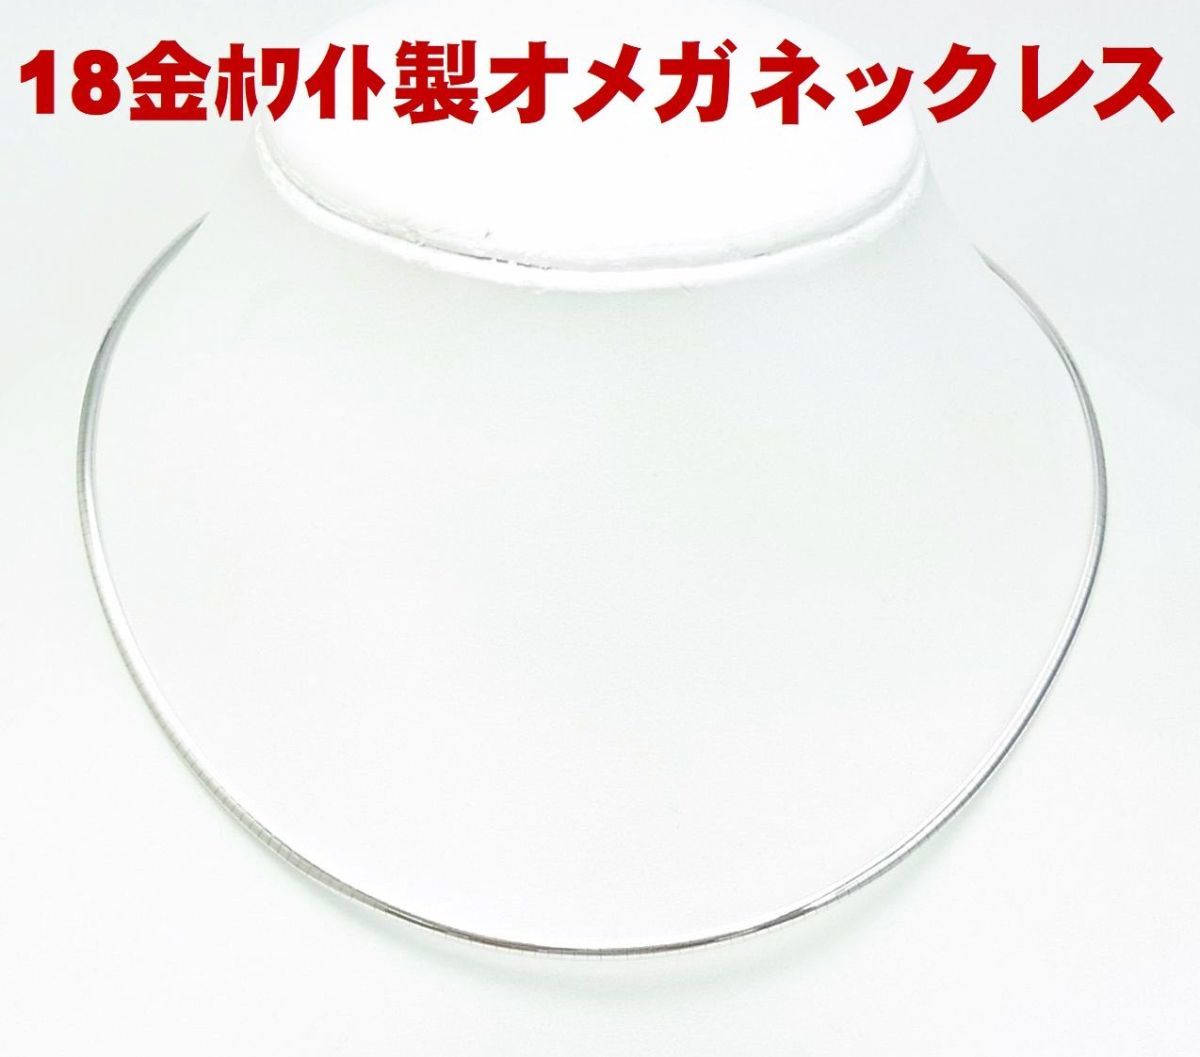 全日本送料無料 18金ホワイトゴールド製 オメガネックレス 卸価格でご